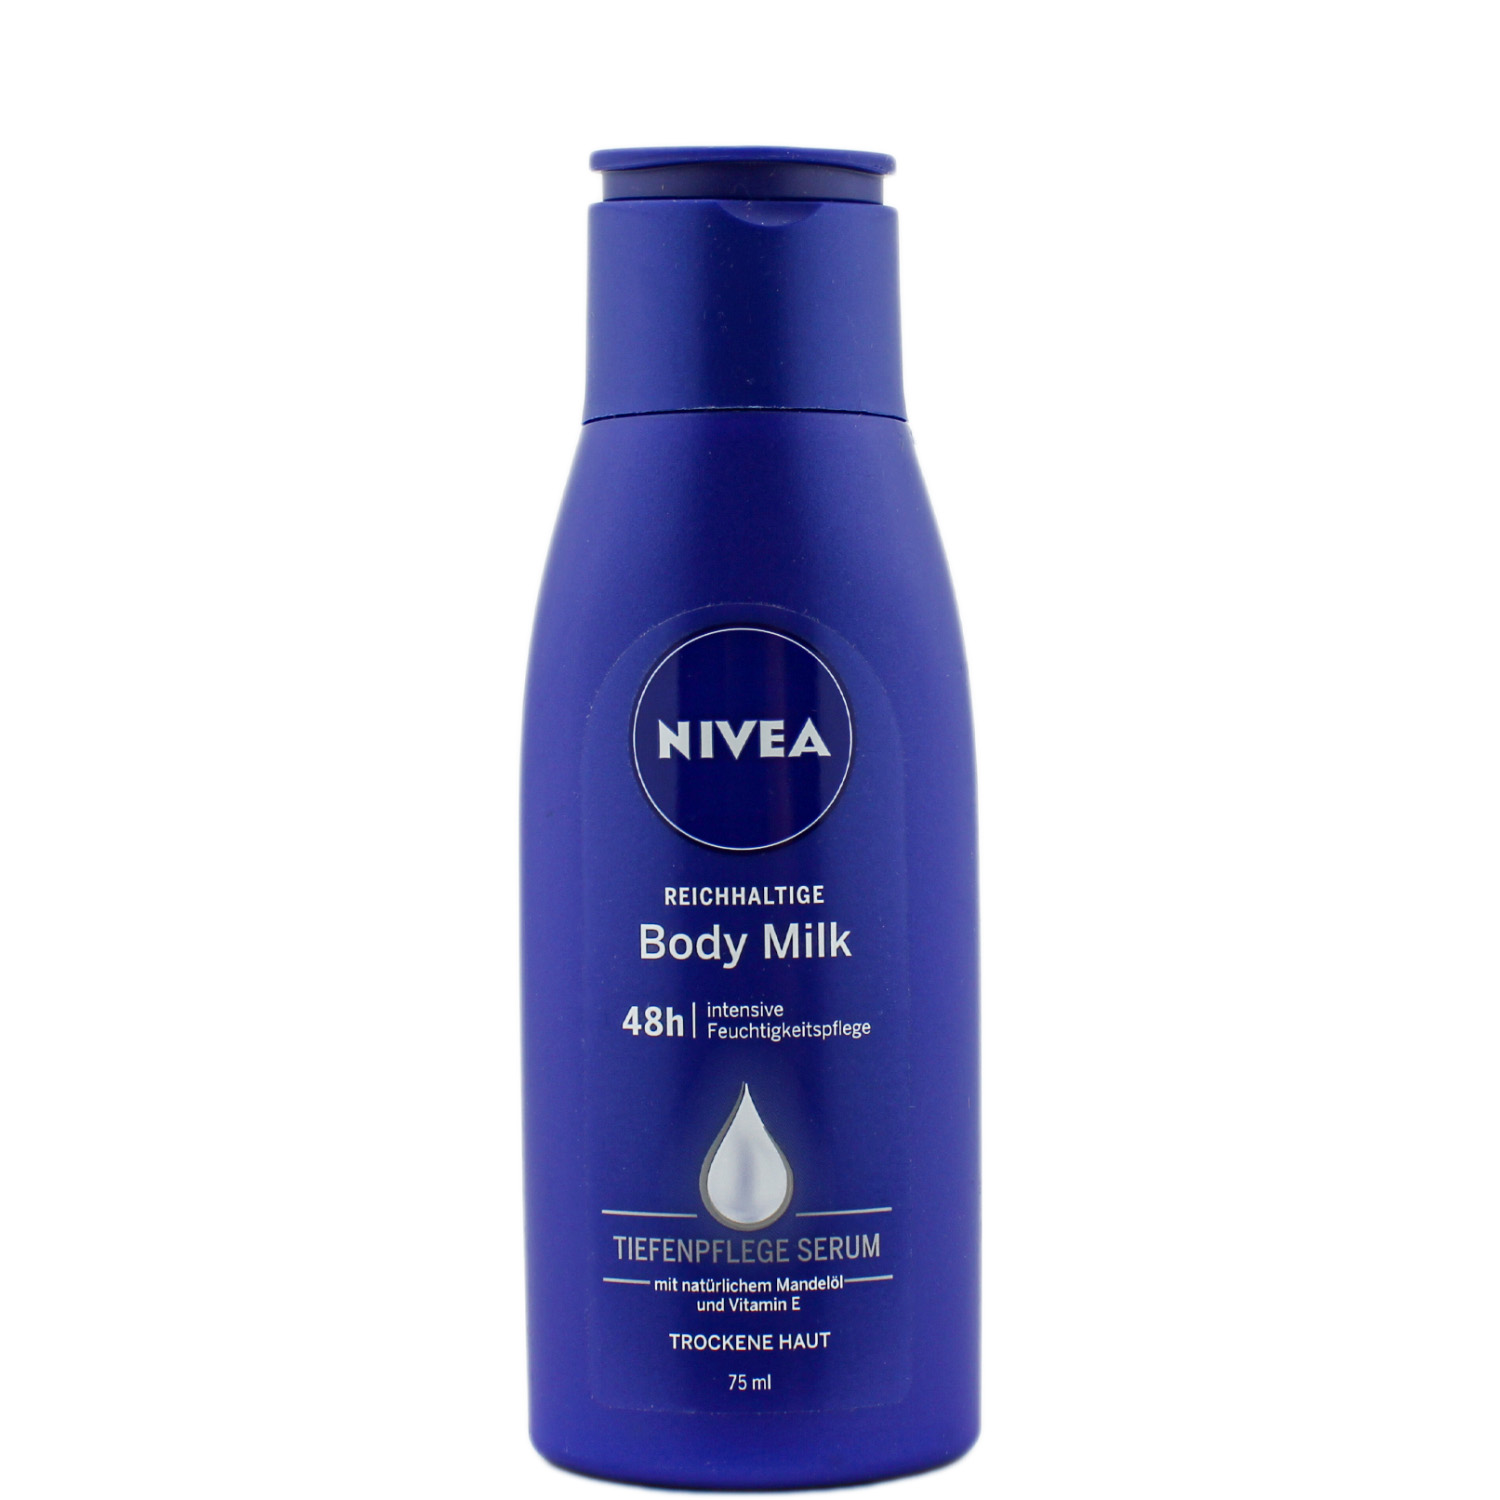 Nivea Reichhaltige Body Milk als Reisegröße 75ml